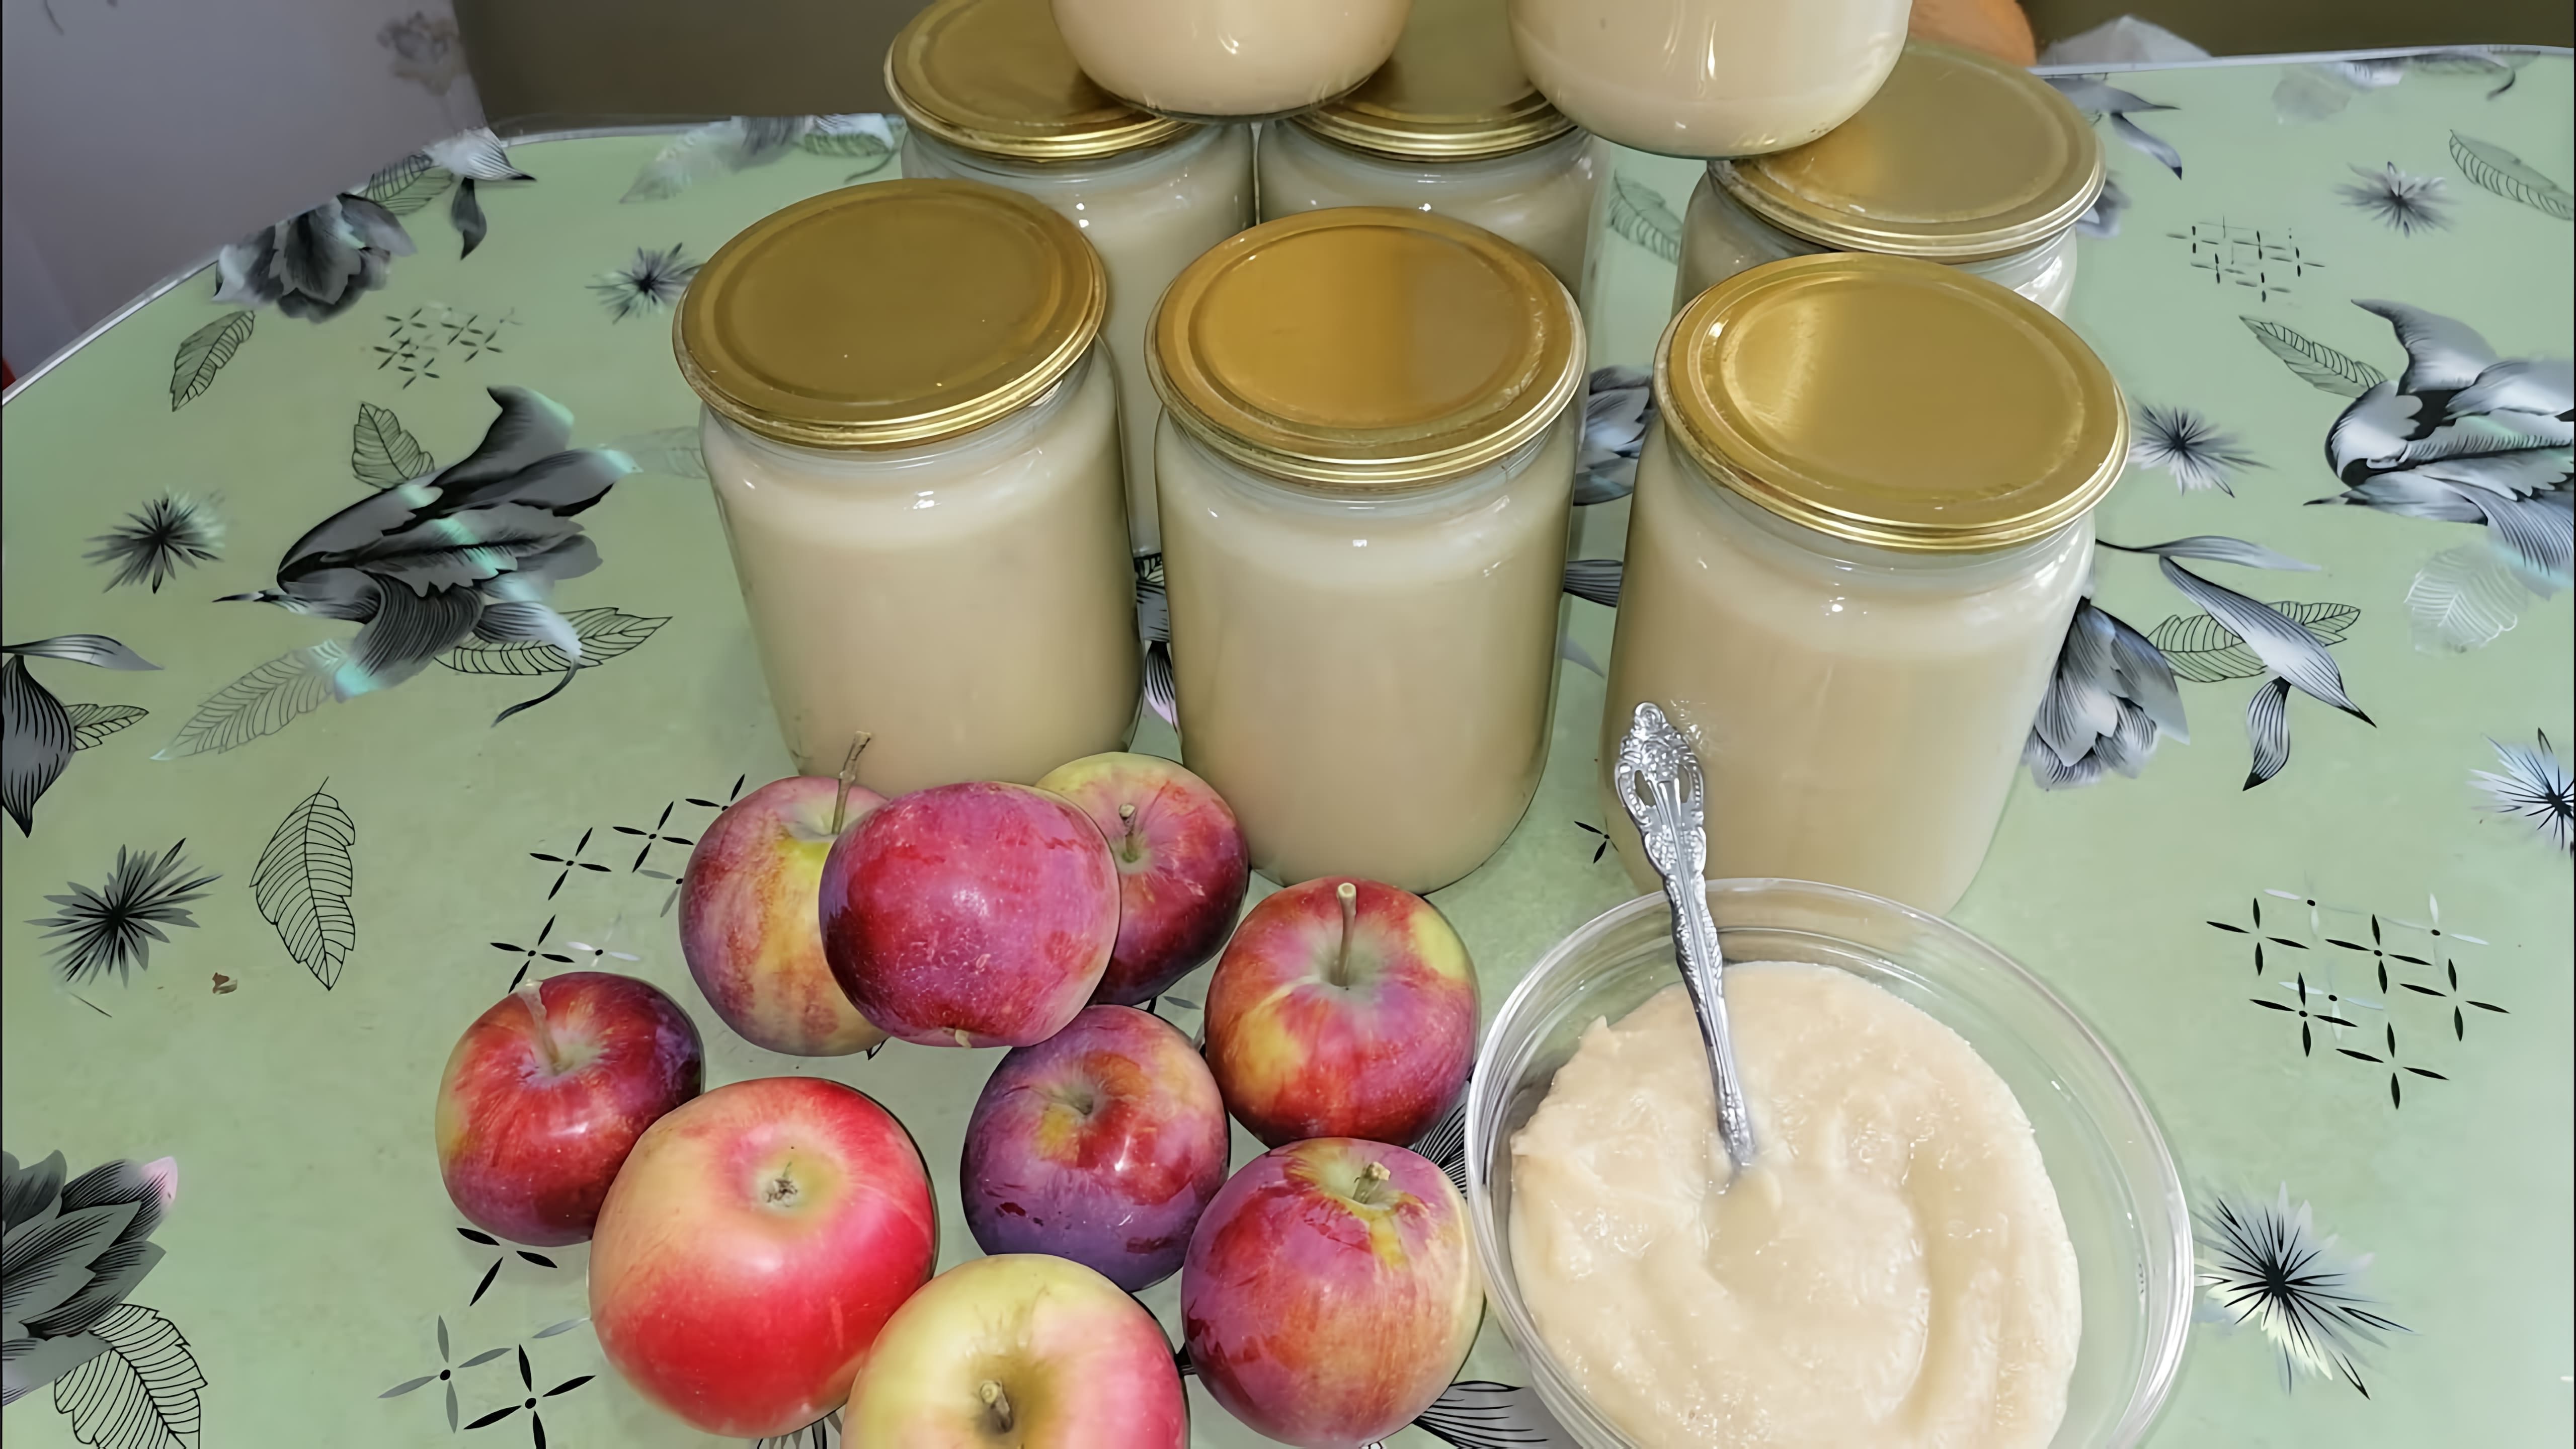 В этом видео демонстрируется процесс приготовления яблочного пюре "Неженка", которое можно использовать как детское питание или как вкусный десерт для всей семьи